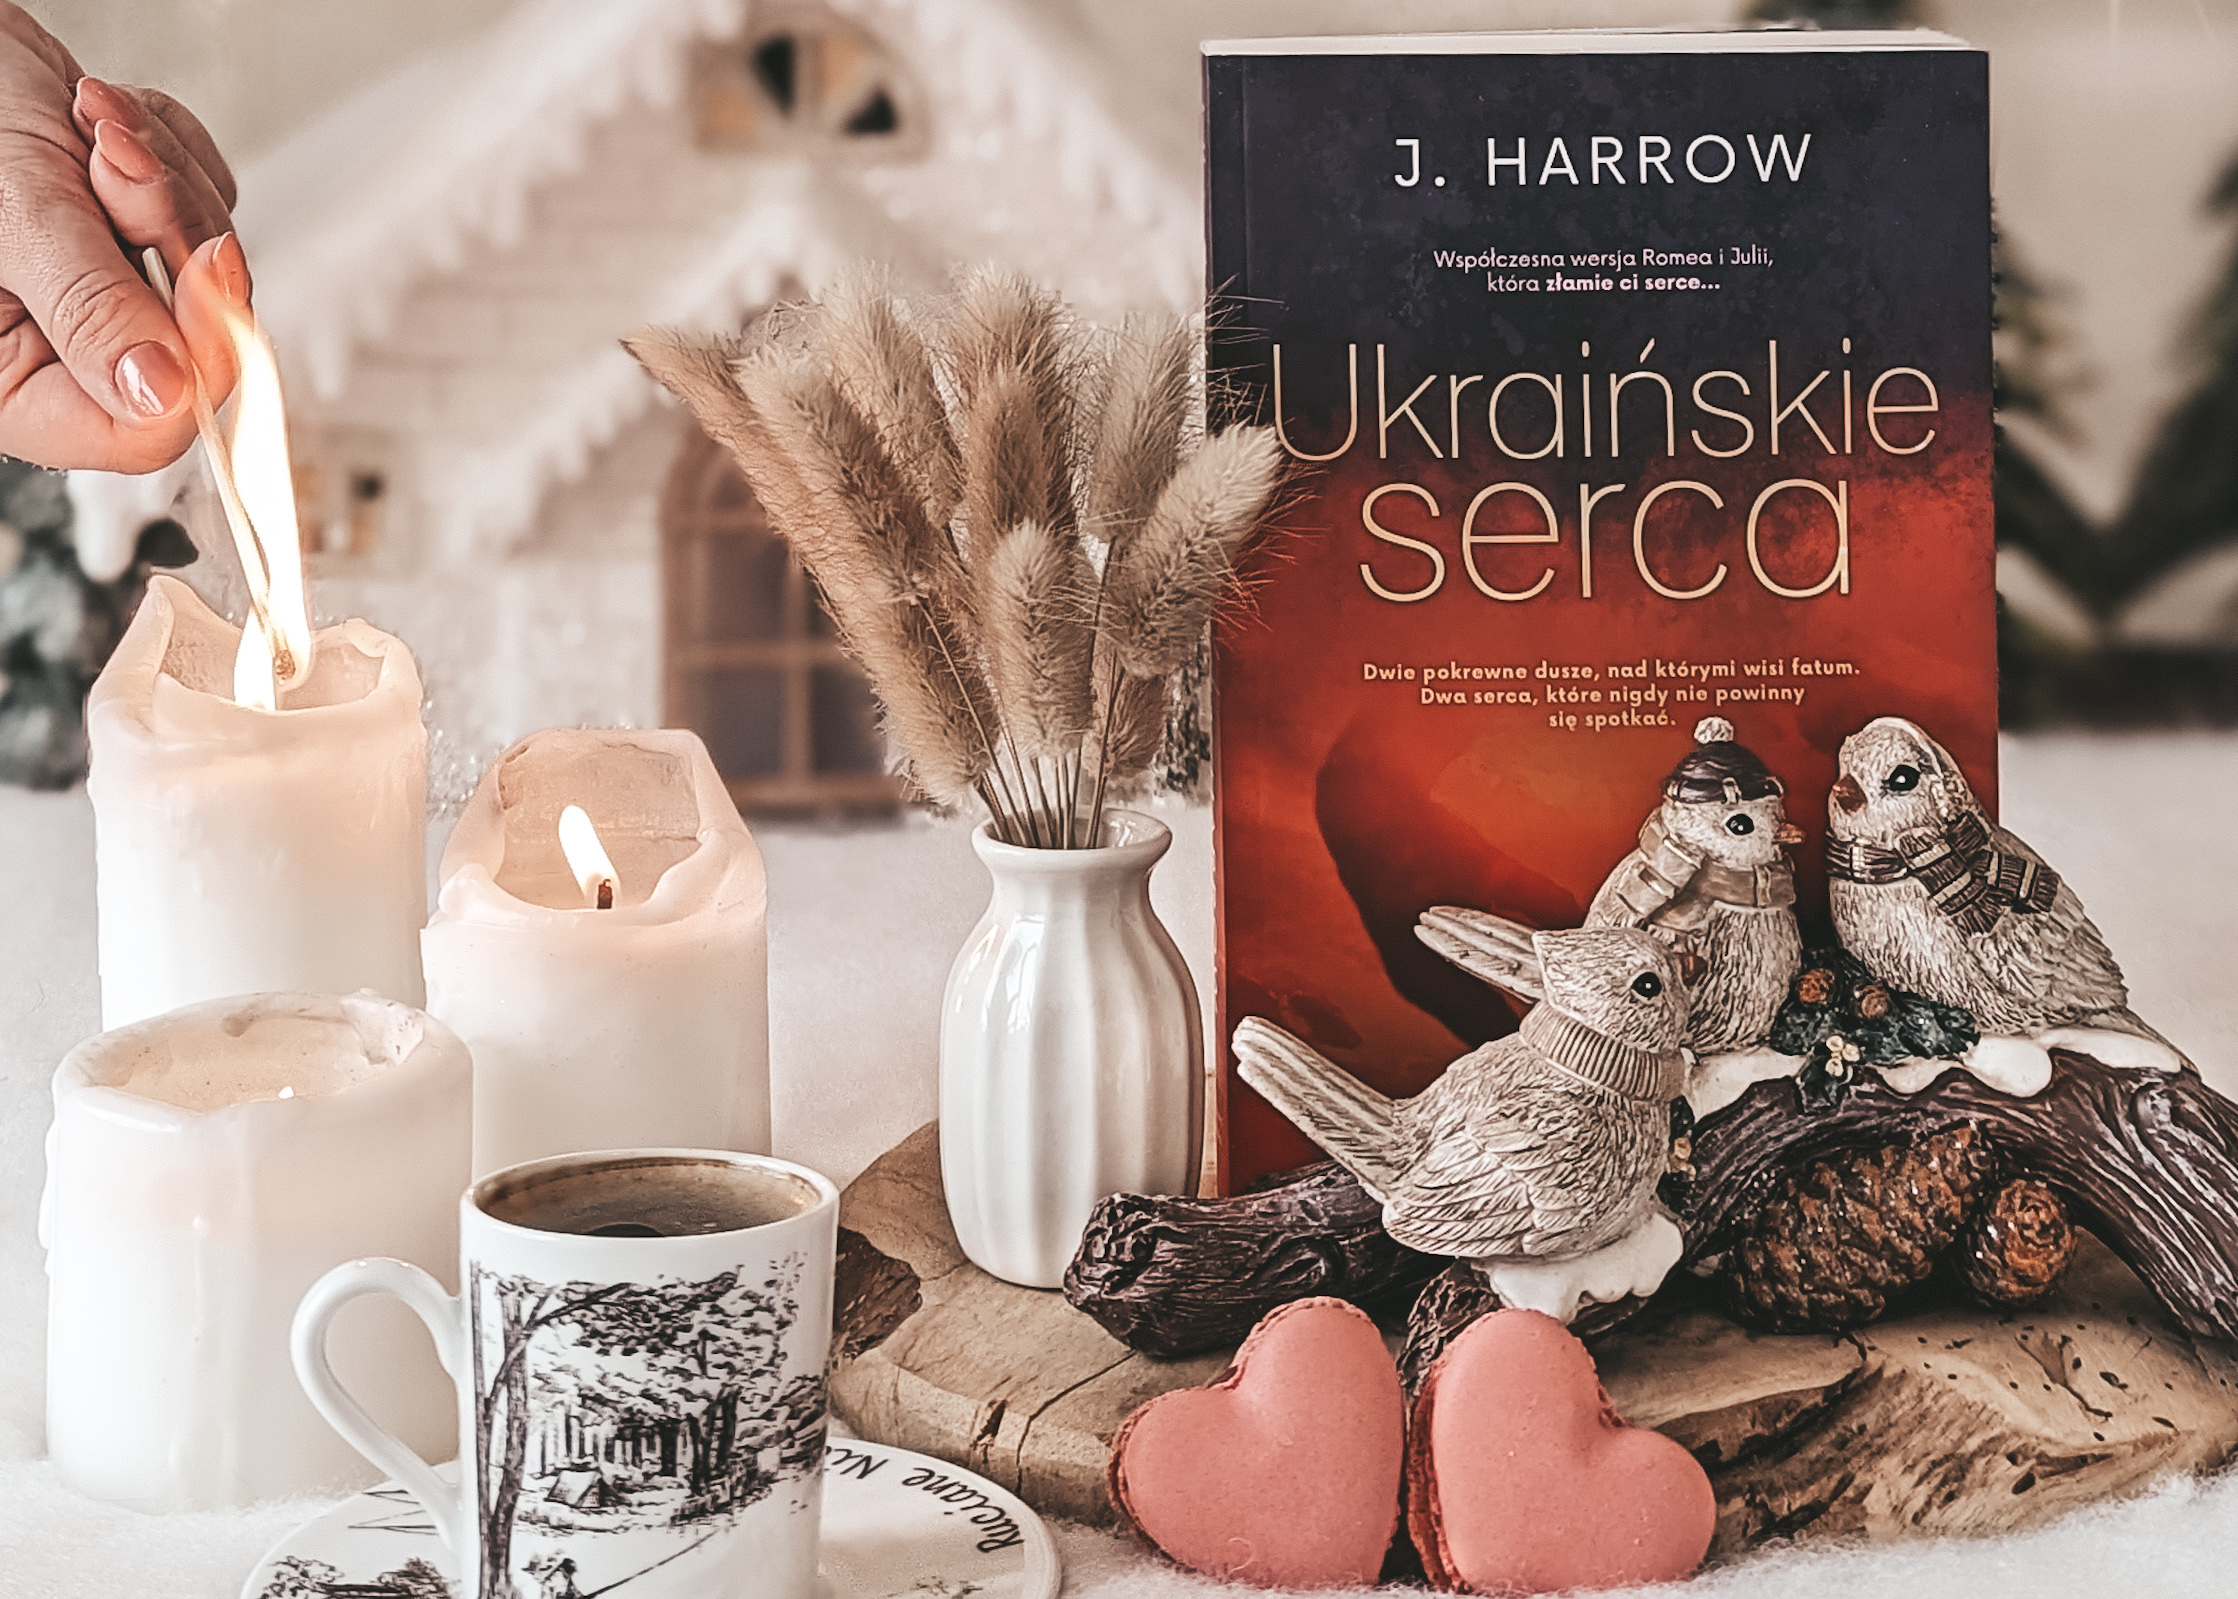 „UKRAIŃSKIE SERCA” – J. HARROW | Przerażająco ekspresyjny portret miłości zakazanej!